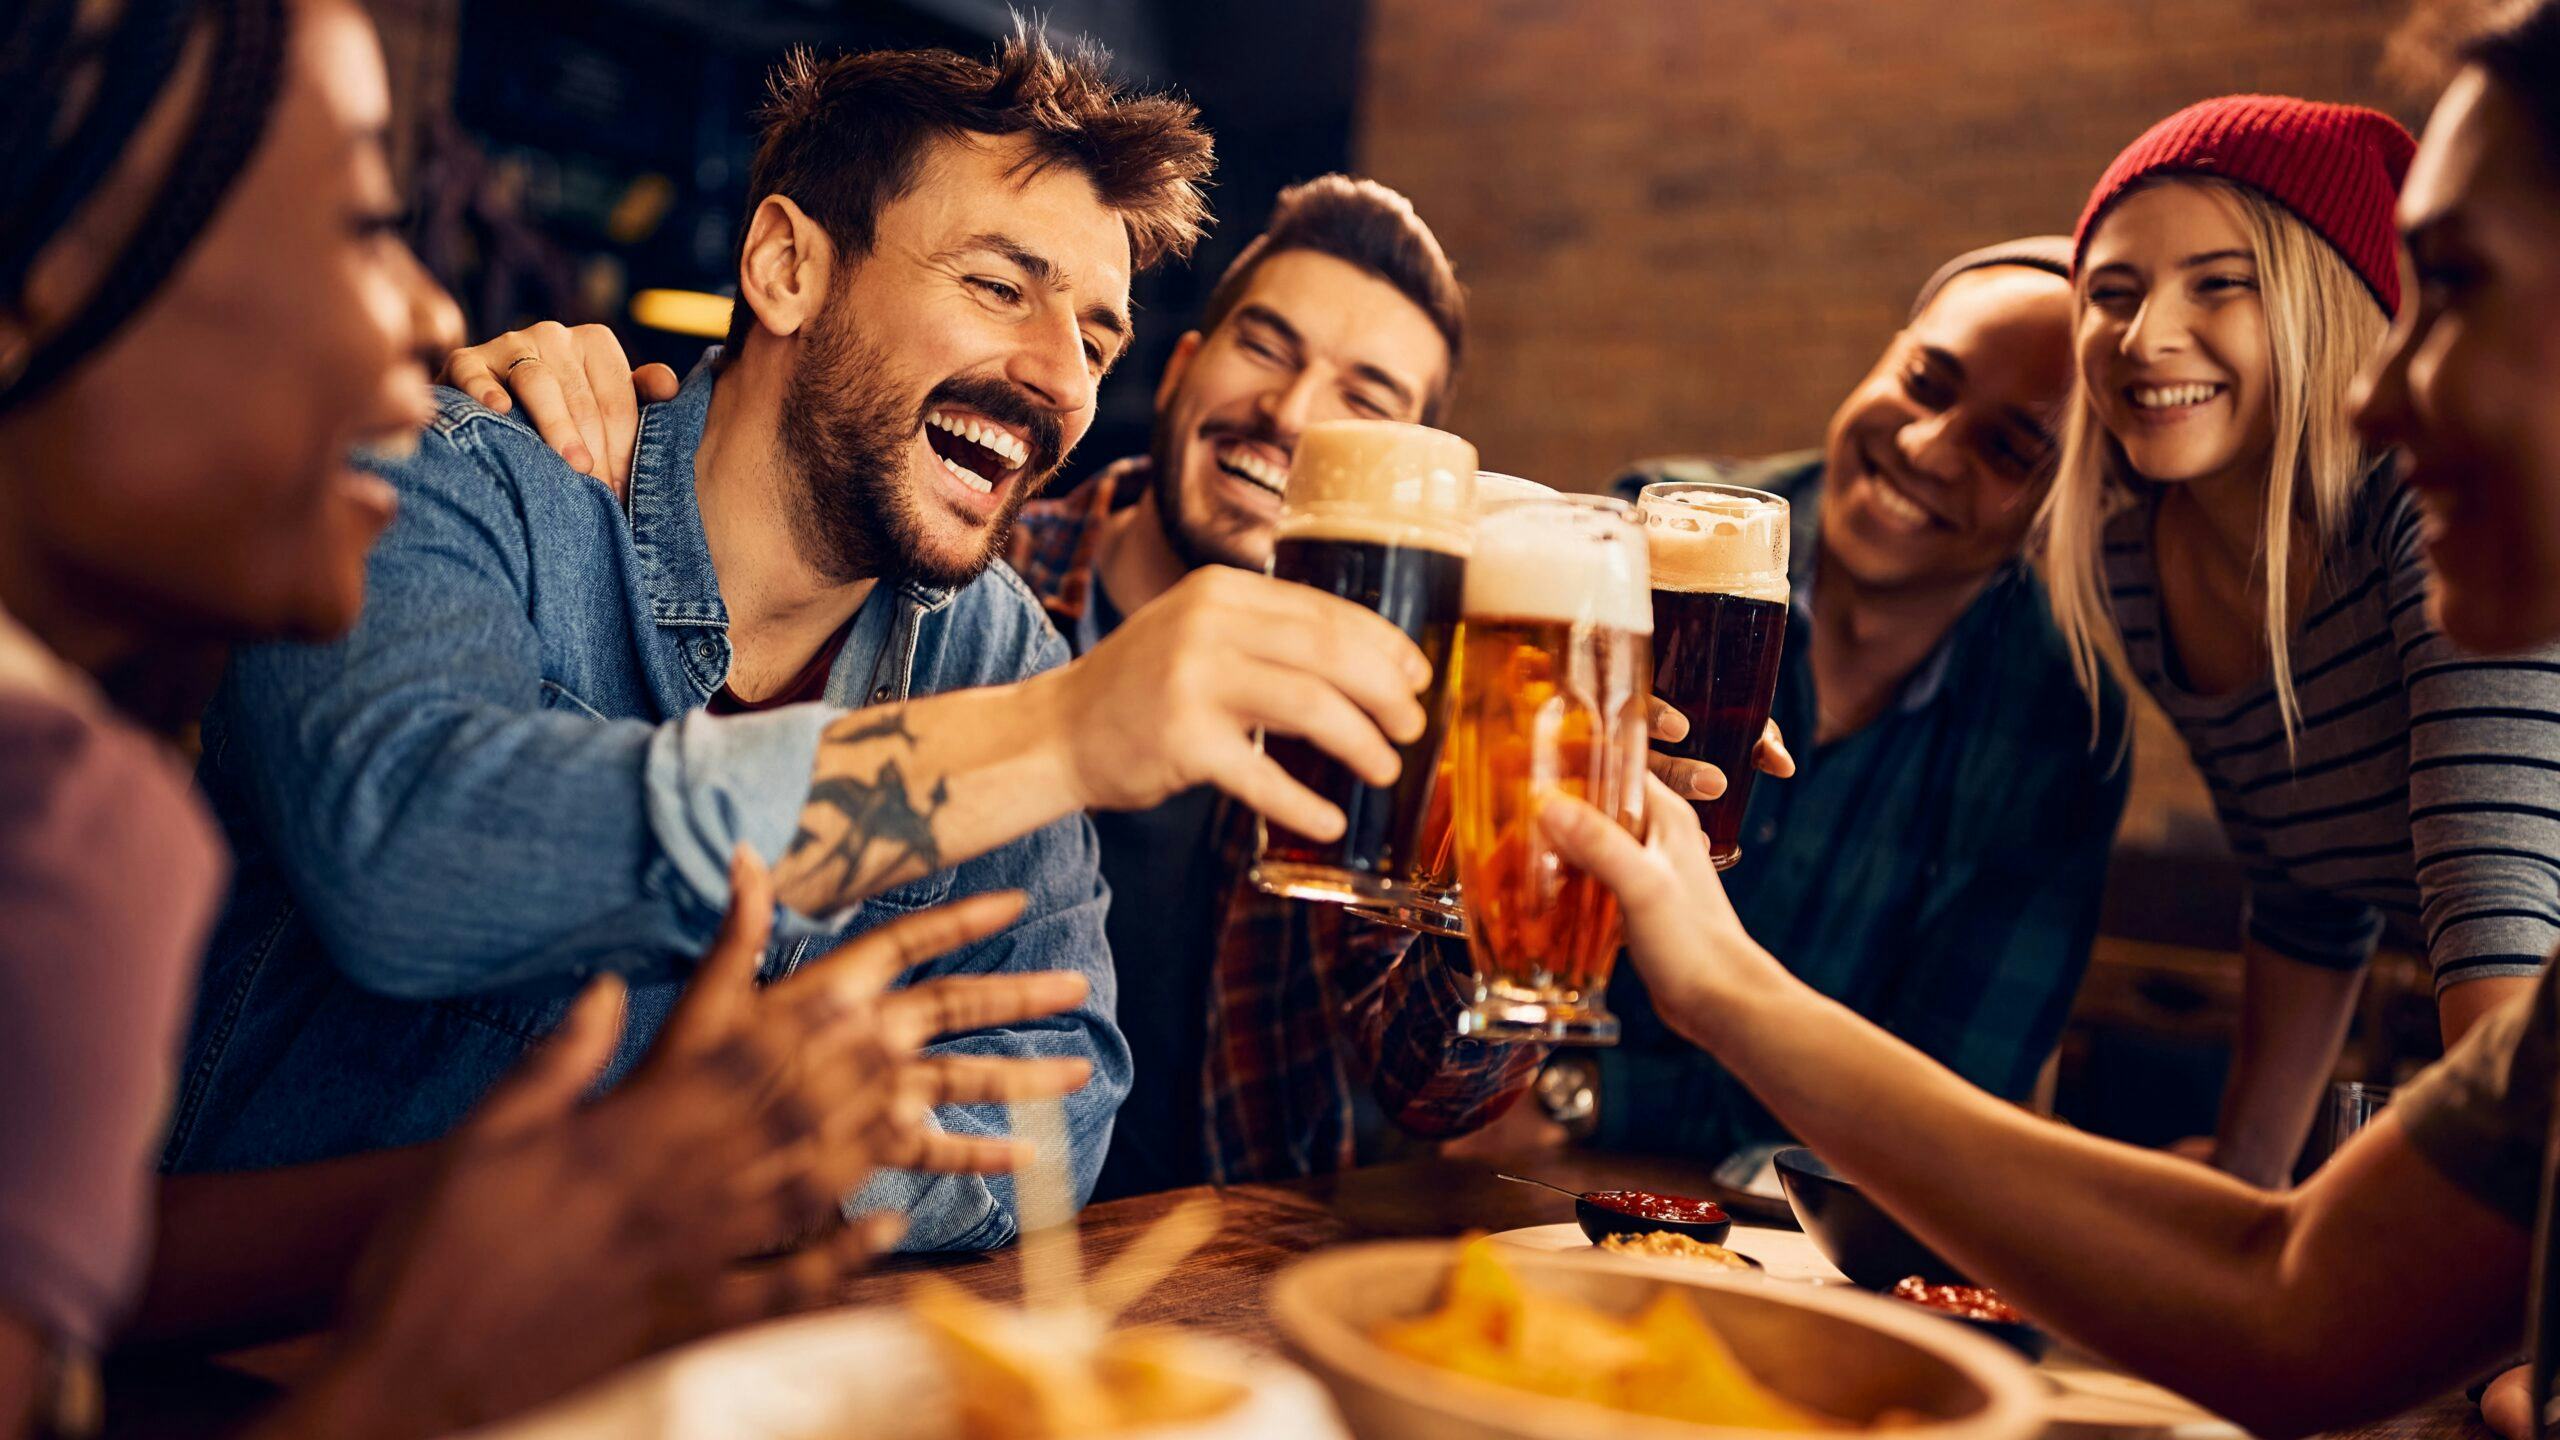 Bepaalt Untappd de bierselectie? 'Bieren die populair zijn krijgen plaatsje op de bierkaart'